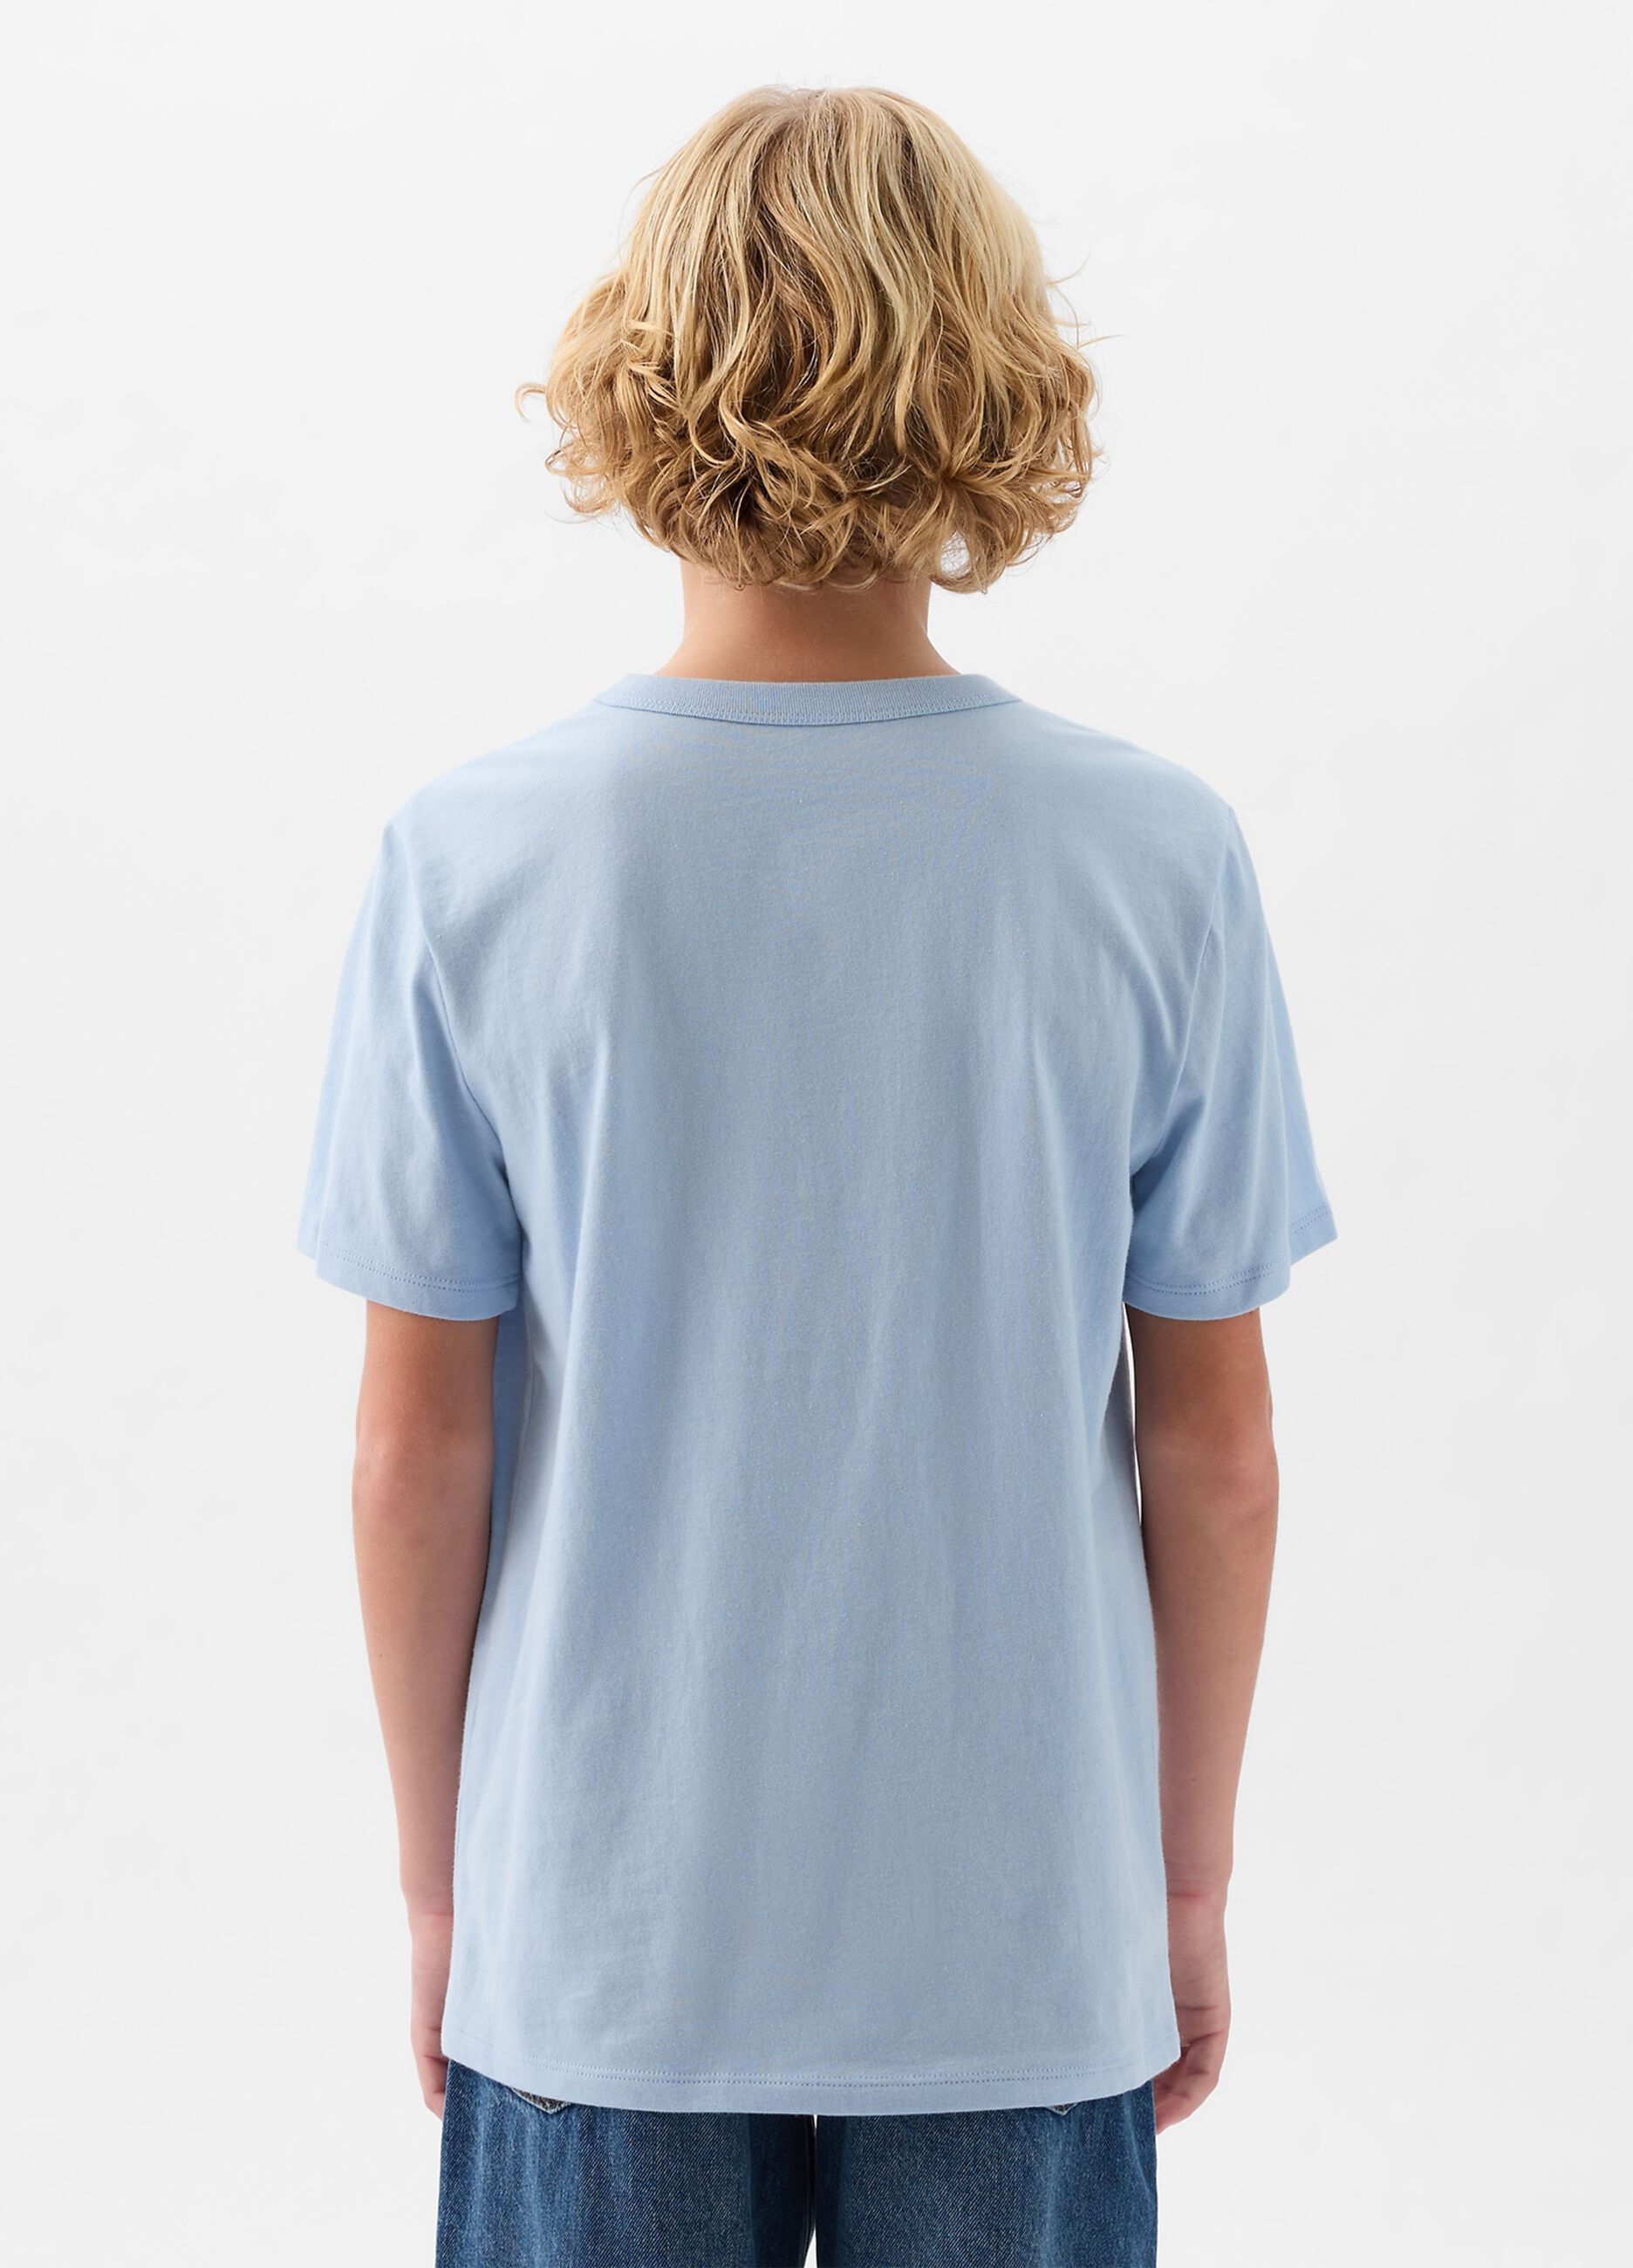 T-shirt in cotone stampa logo e squalo_1